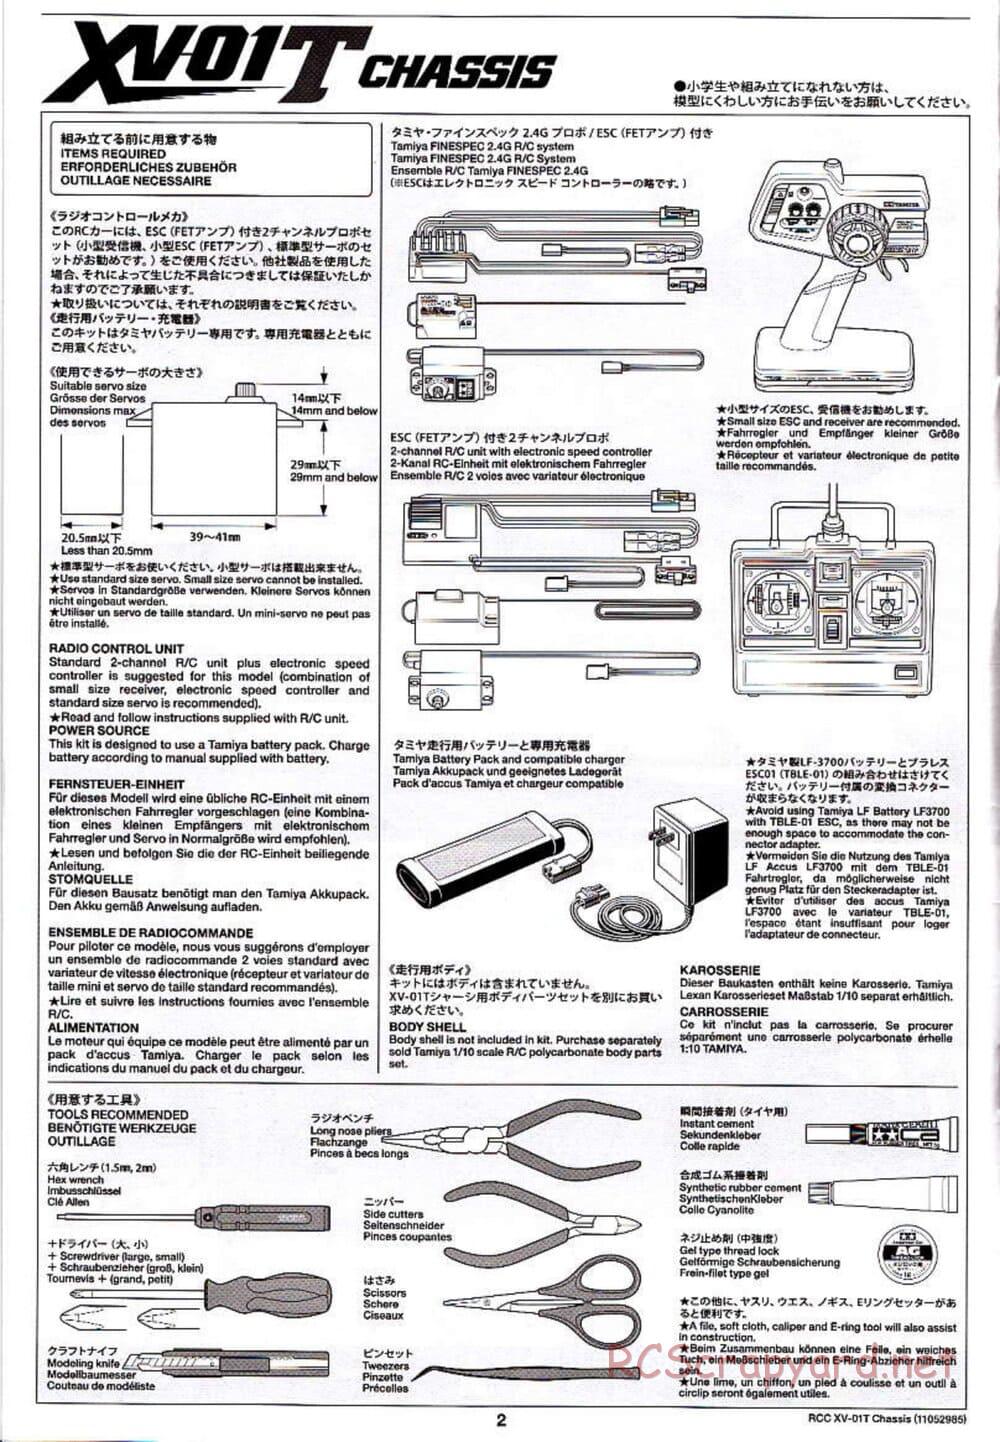 Tamiya - XV-01T Chassis - Manual - Page 2